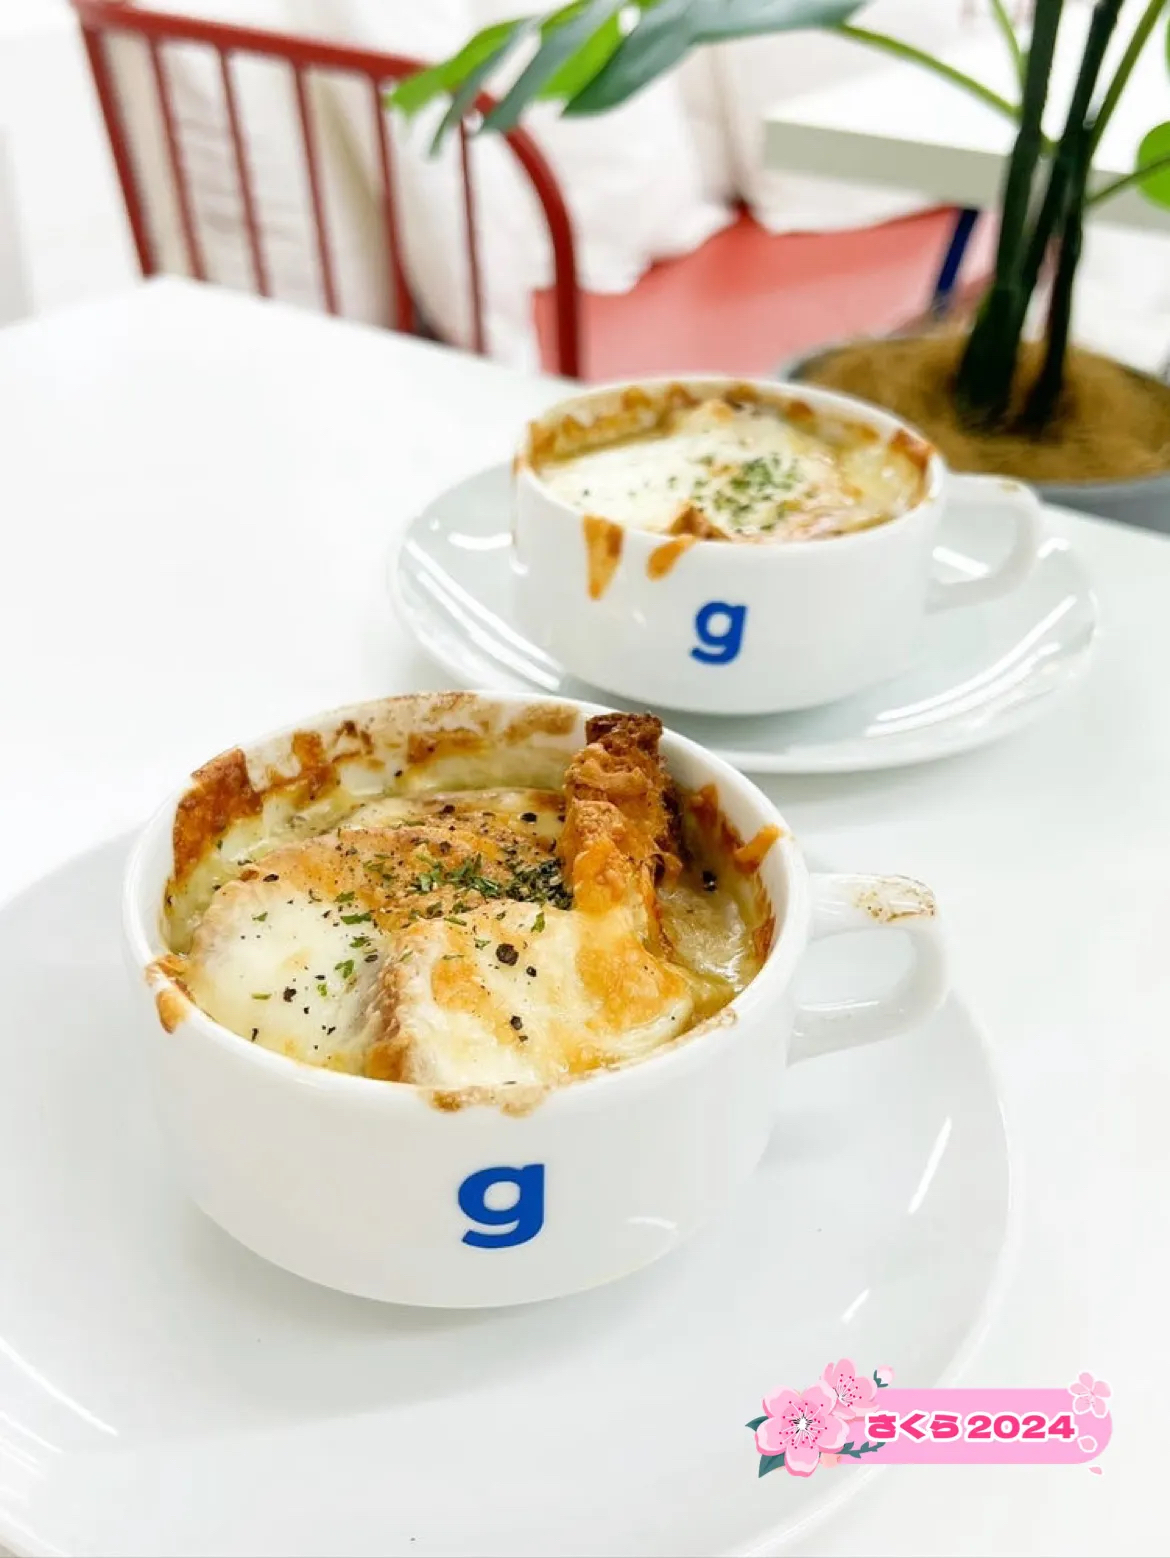 【北九州咖啡厅】在寒冷的季节享受热々洋葱焗汤